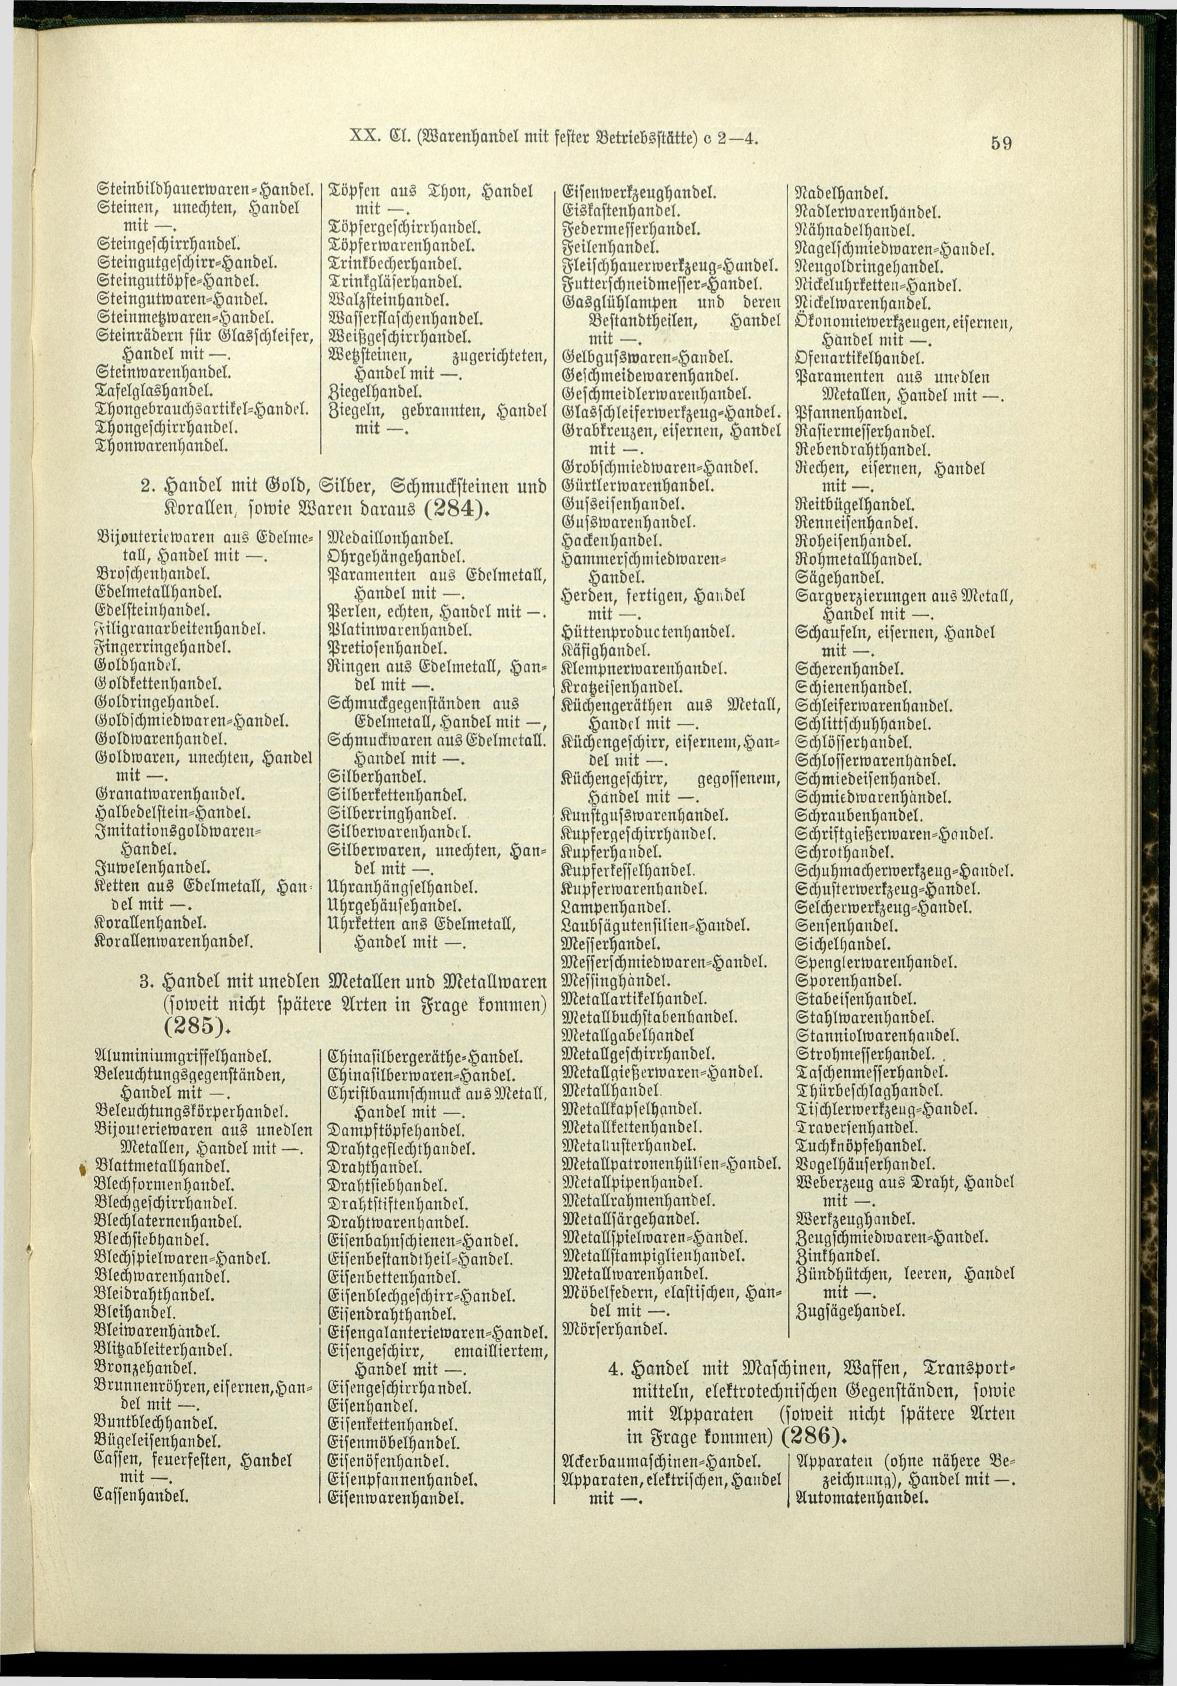 Verzeichnis der Gewerbe der im Reichsrathe vertretenen Königreiche und Länder 1900 - Page 63